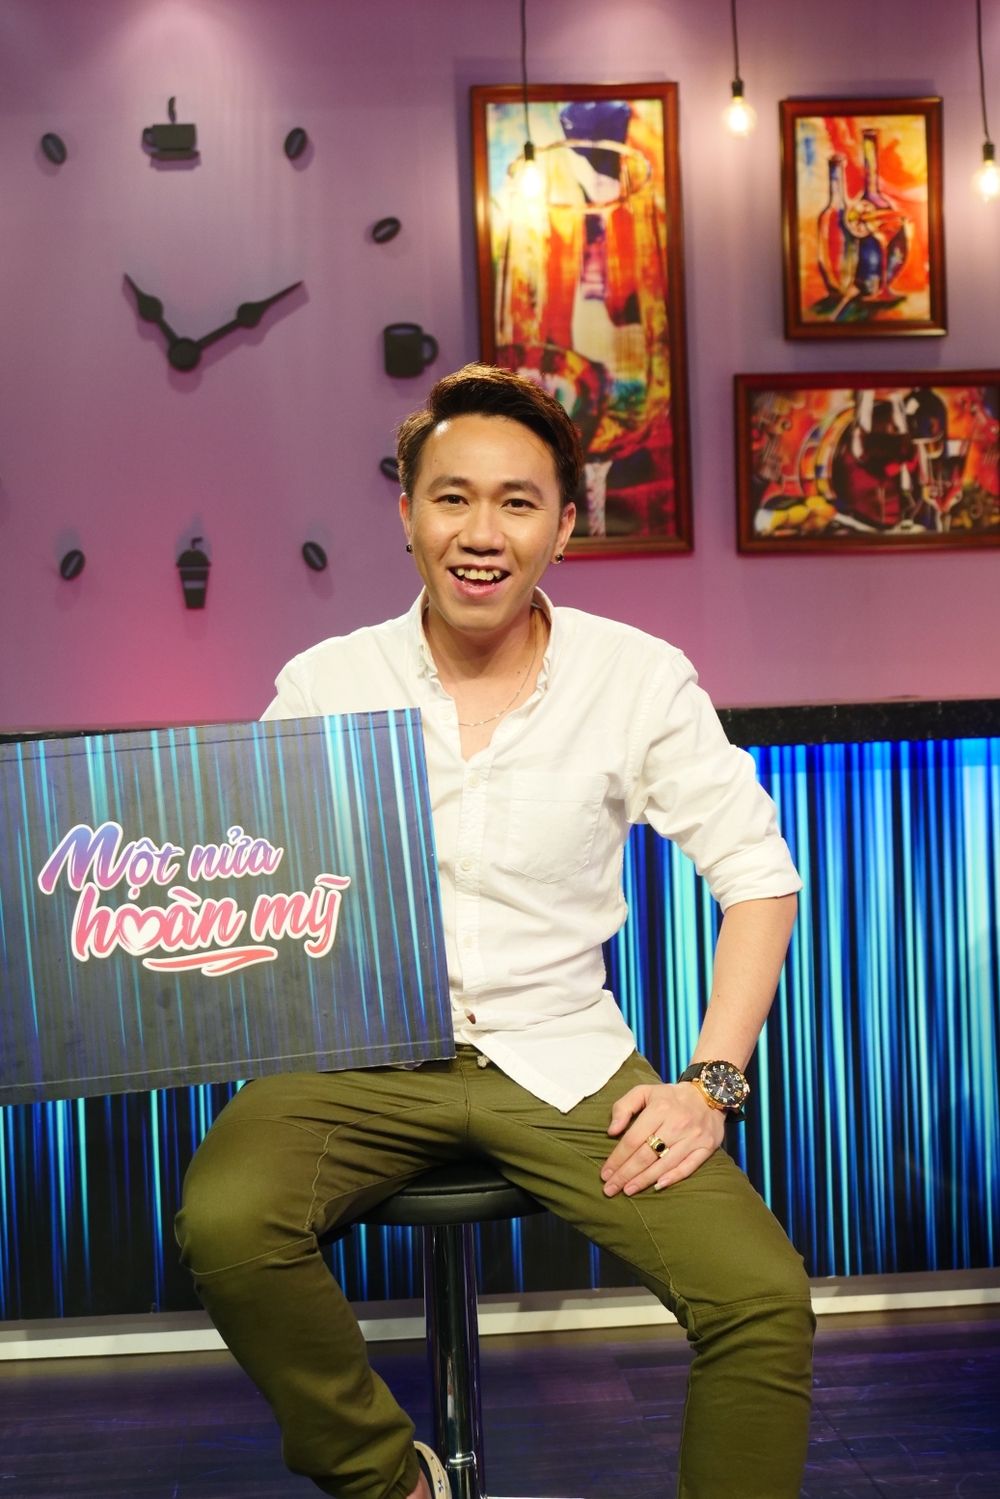 Danh hài Anh Đức công khai tỏ tình với vũ công Kim Anh trên sóng truyền hình - Tin sao Viet - Tin tuc sao Viet - Scandal sao Viet - Tin tuc cua Sao - Tin cua Sao